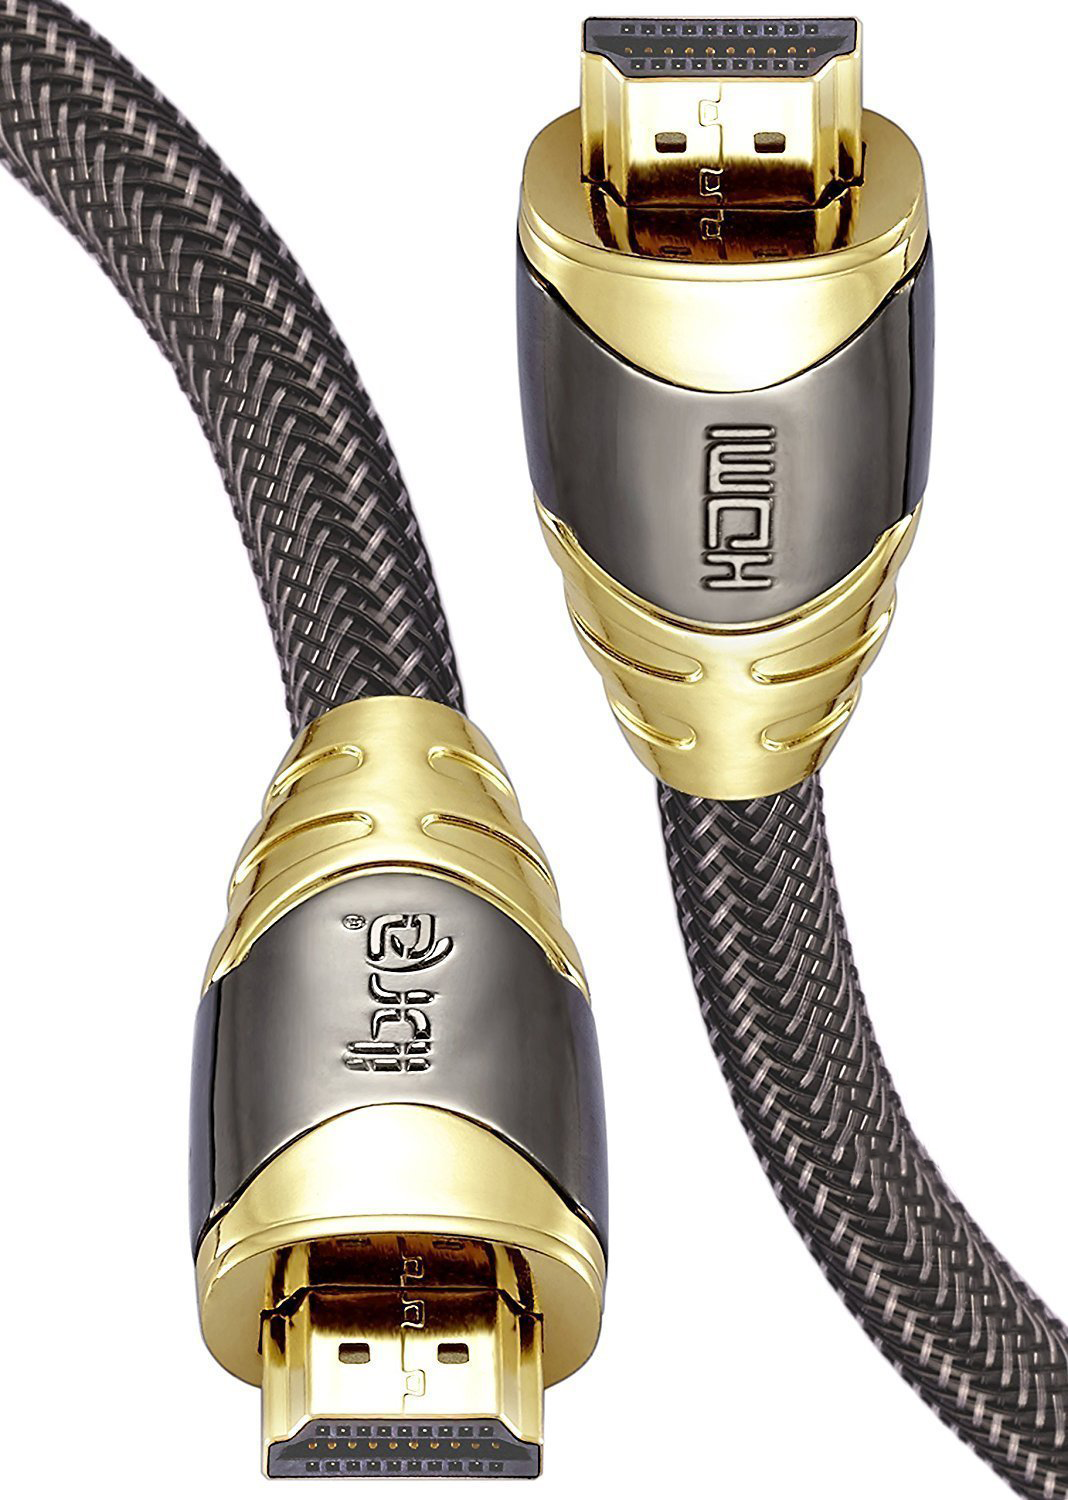 3M Premium 8K 2.1 HDMI cable - IBRA Luxury Series